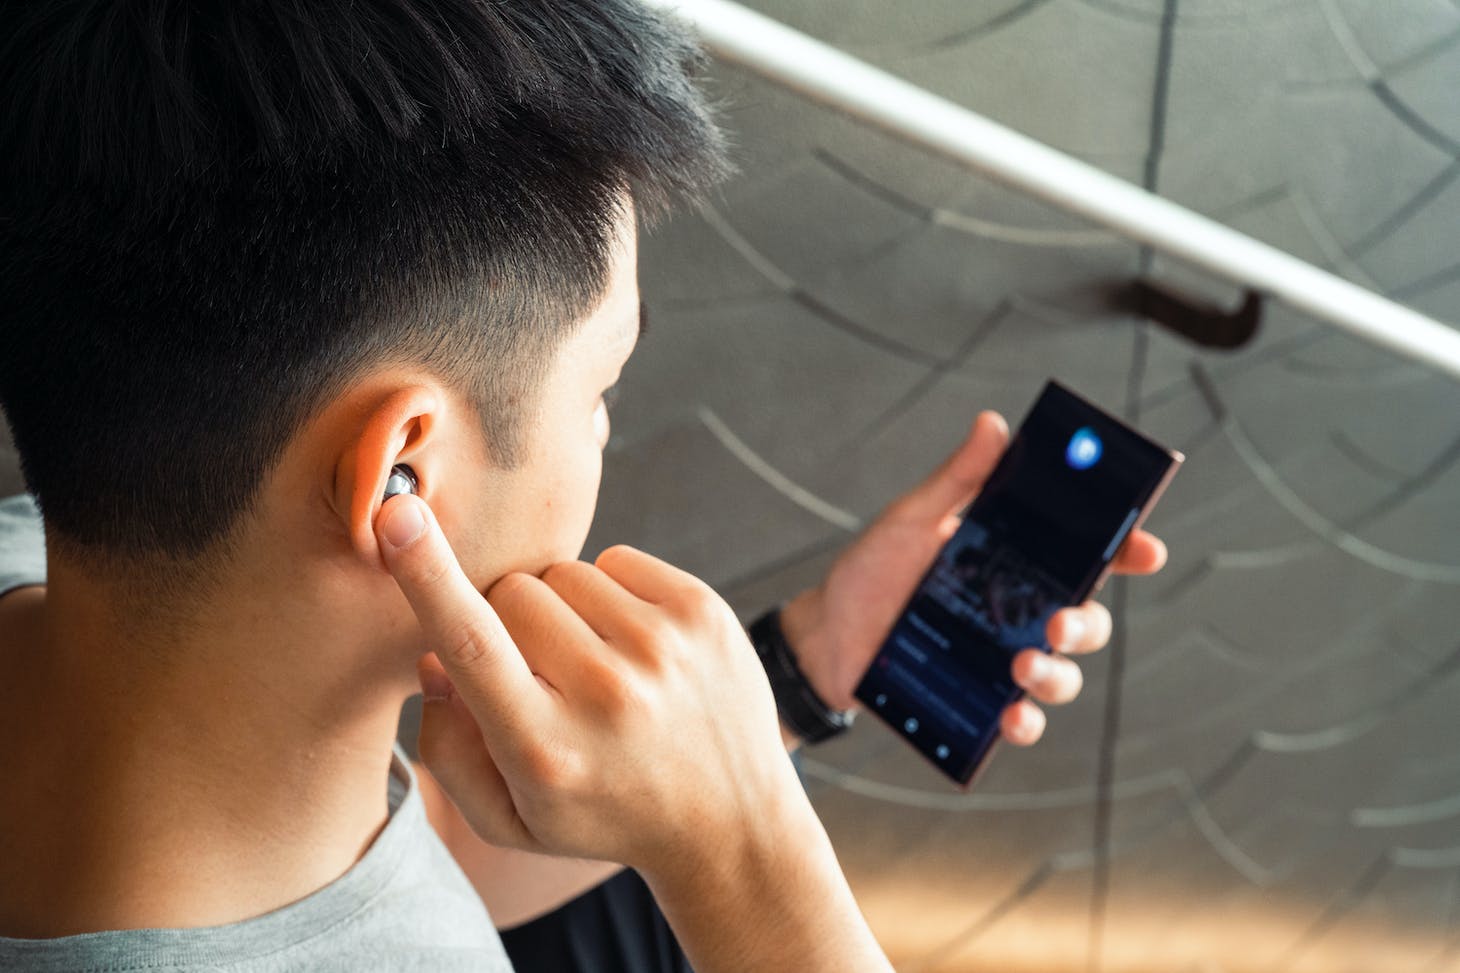 三星Galaxy Buds Live 真无线降噪耳机开箱评测：创新造型服贴耳际配戴更舒适，丰富功能超强降噪音质更胜以往